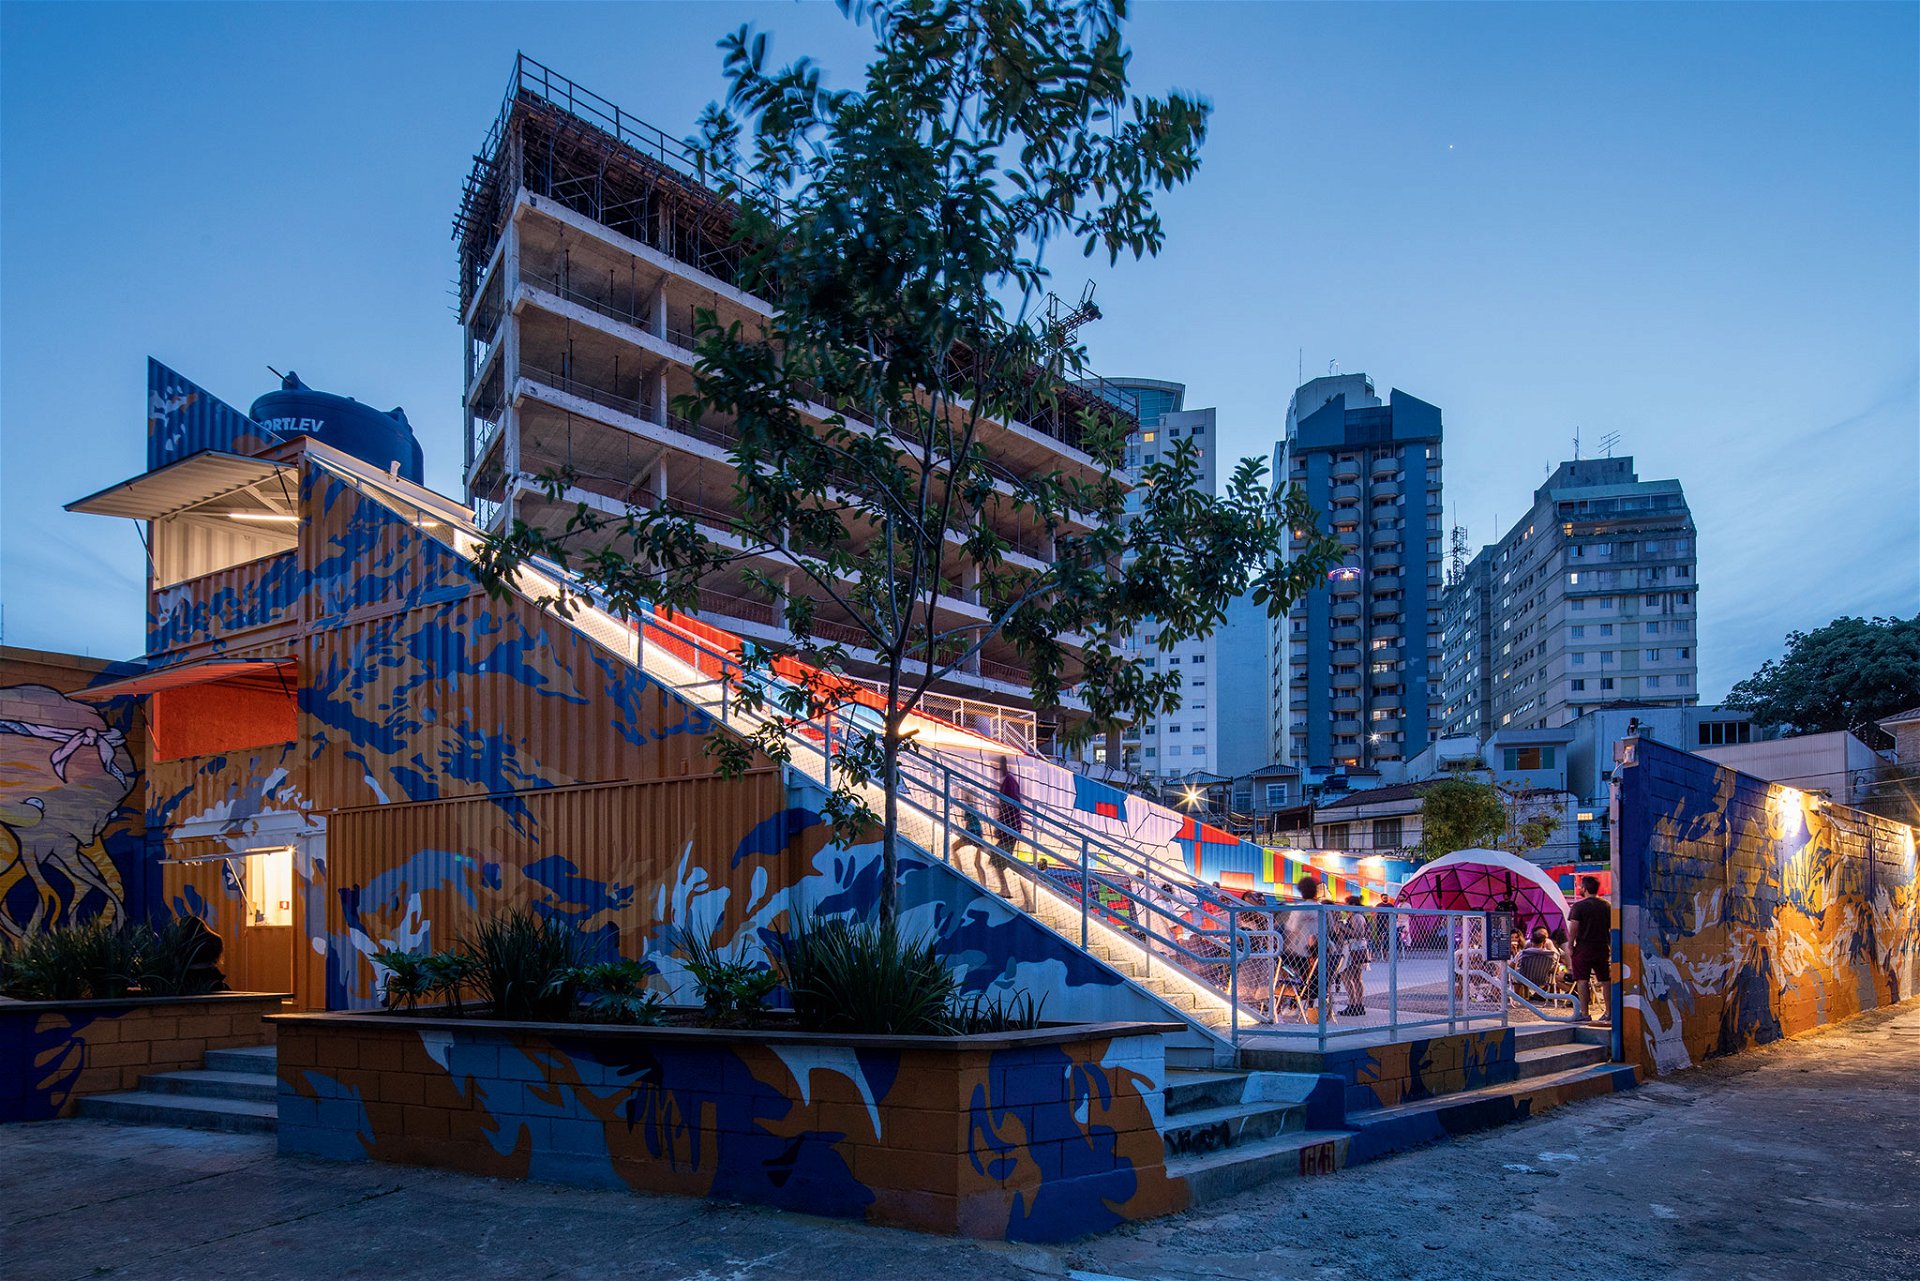 LOTE SuperLimão, 2021 »Ein stimulierender Ort in Pinheiros, einem Boheme-Viertel. Wir haben hier einen pyramidenförmigen Rahmen geschaffen, der als Bühne dient und auch als kleiner Berg, von dem man einen Blick auf die Stadt hat.«